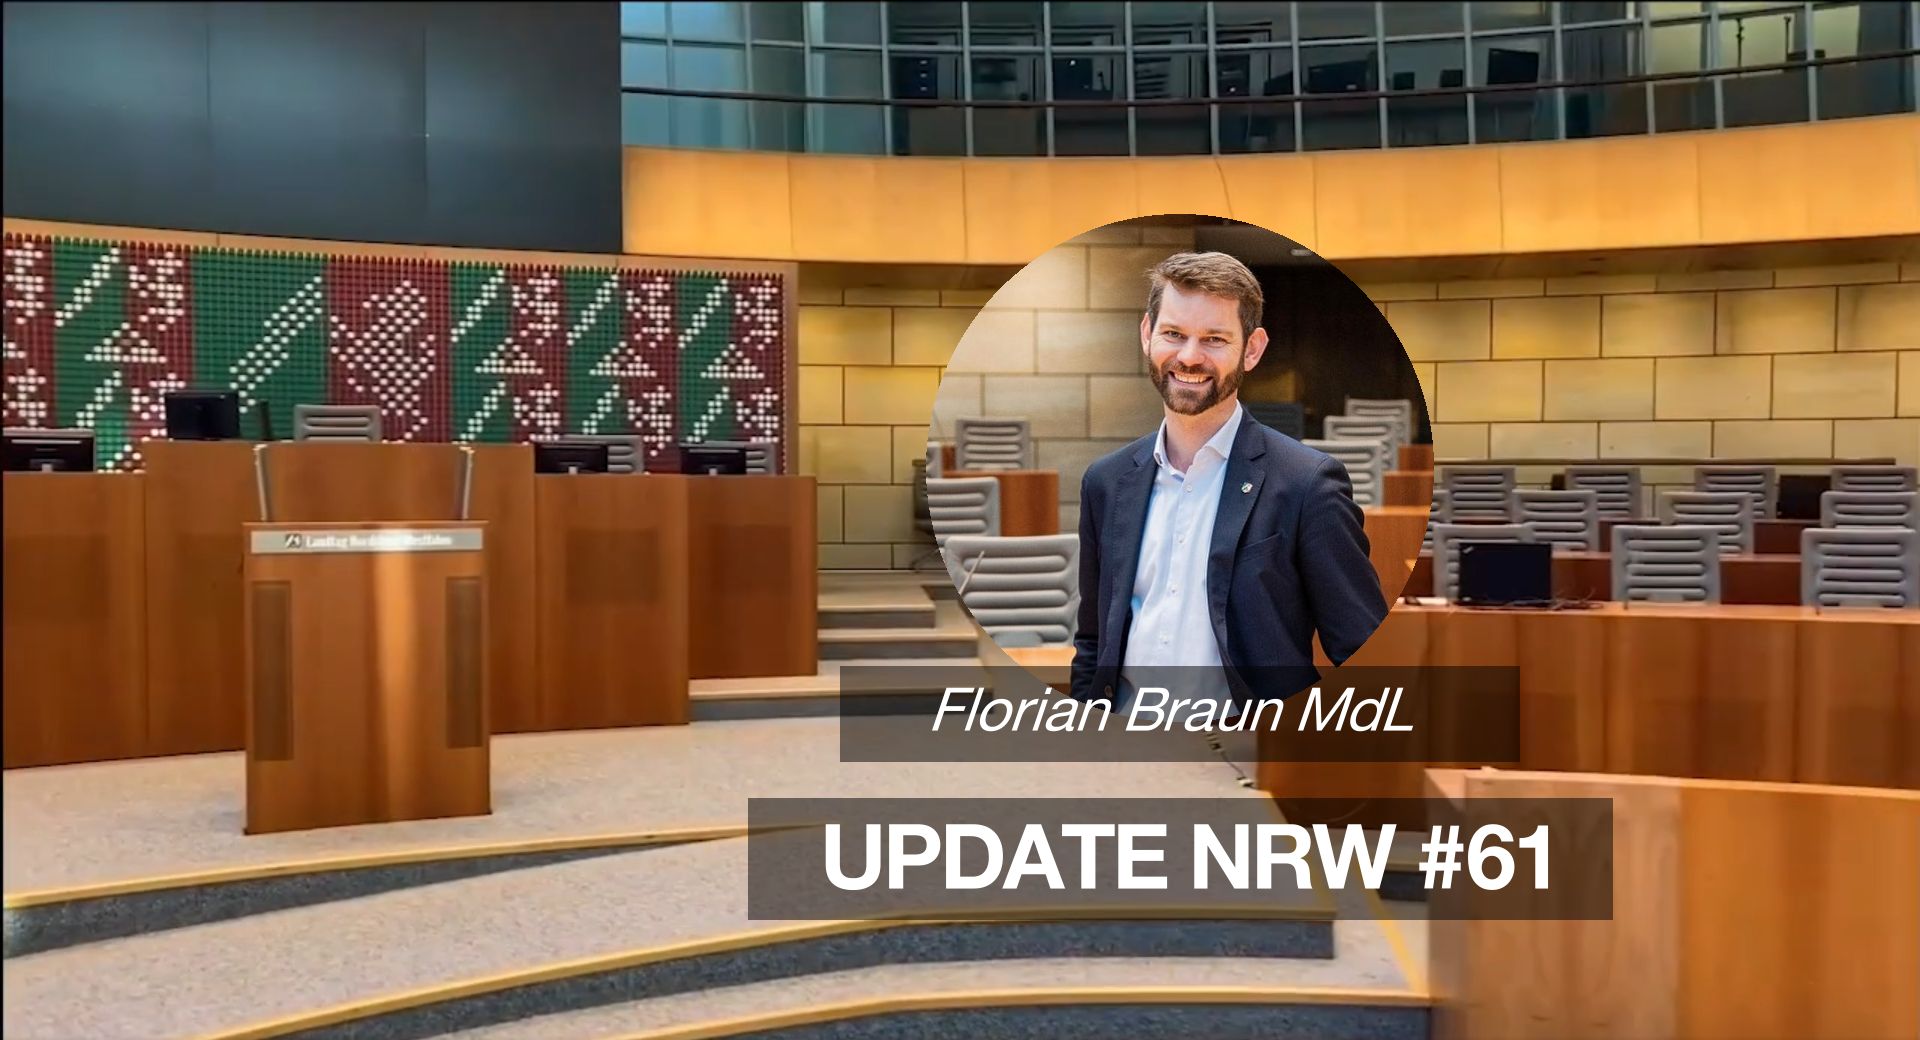 Florian Braun MdL: Update NRW #61